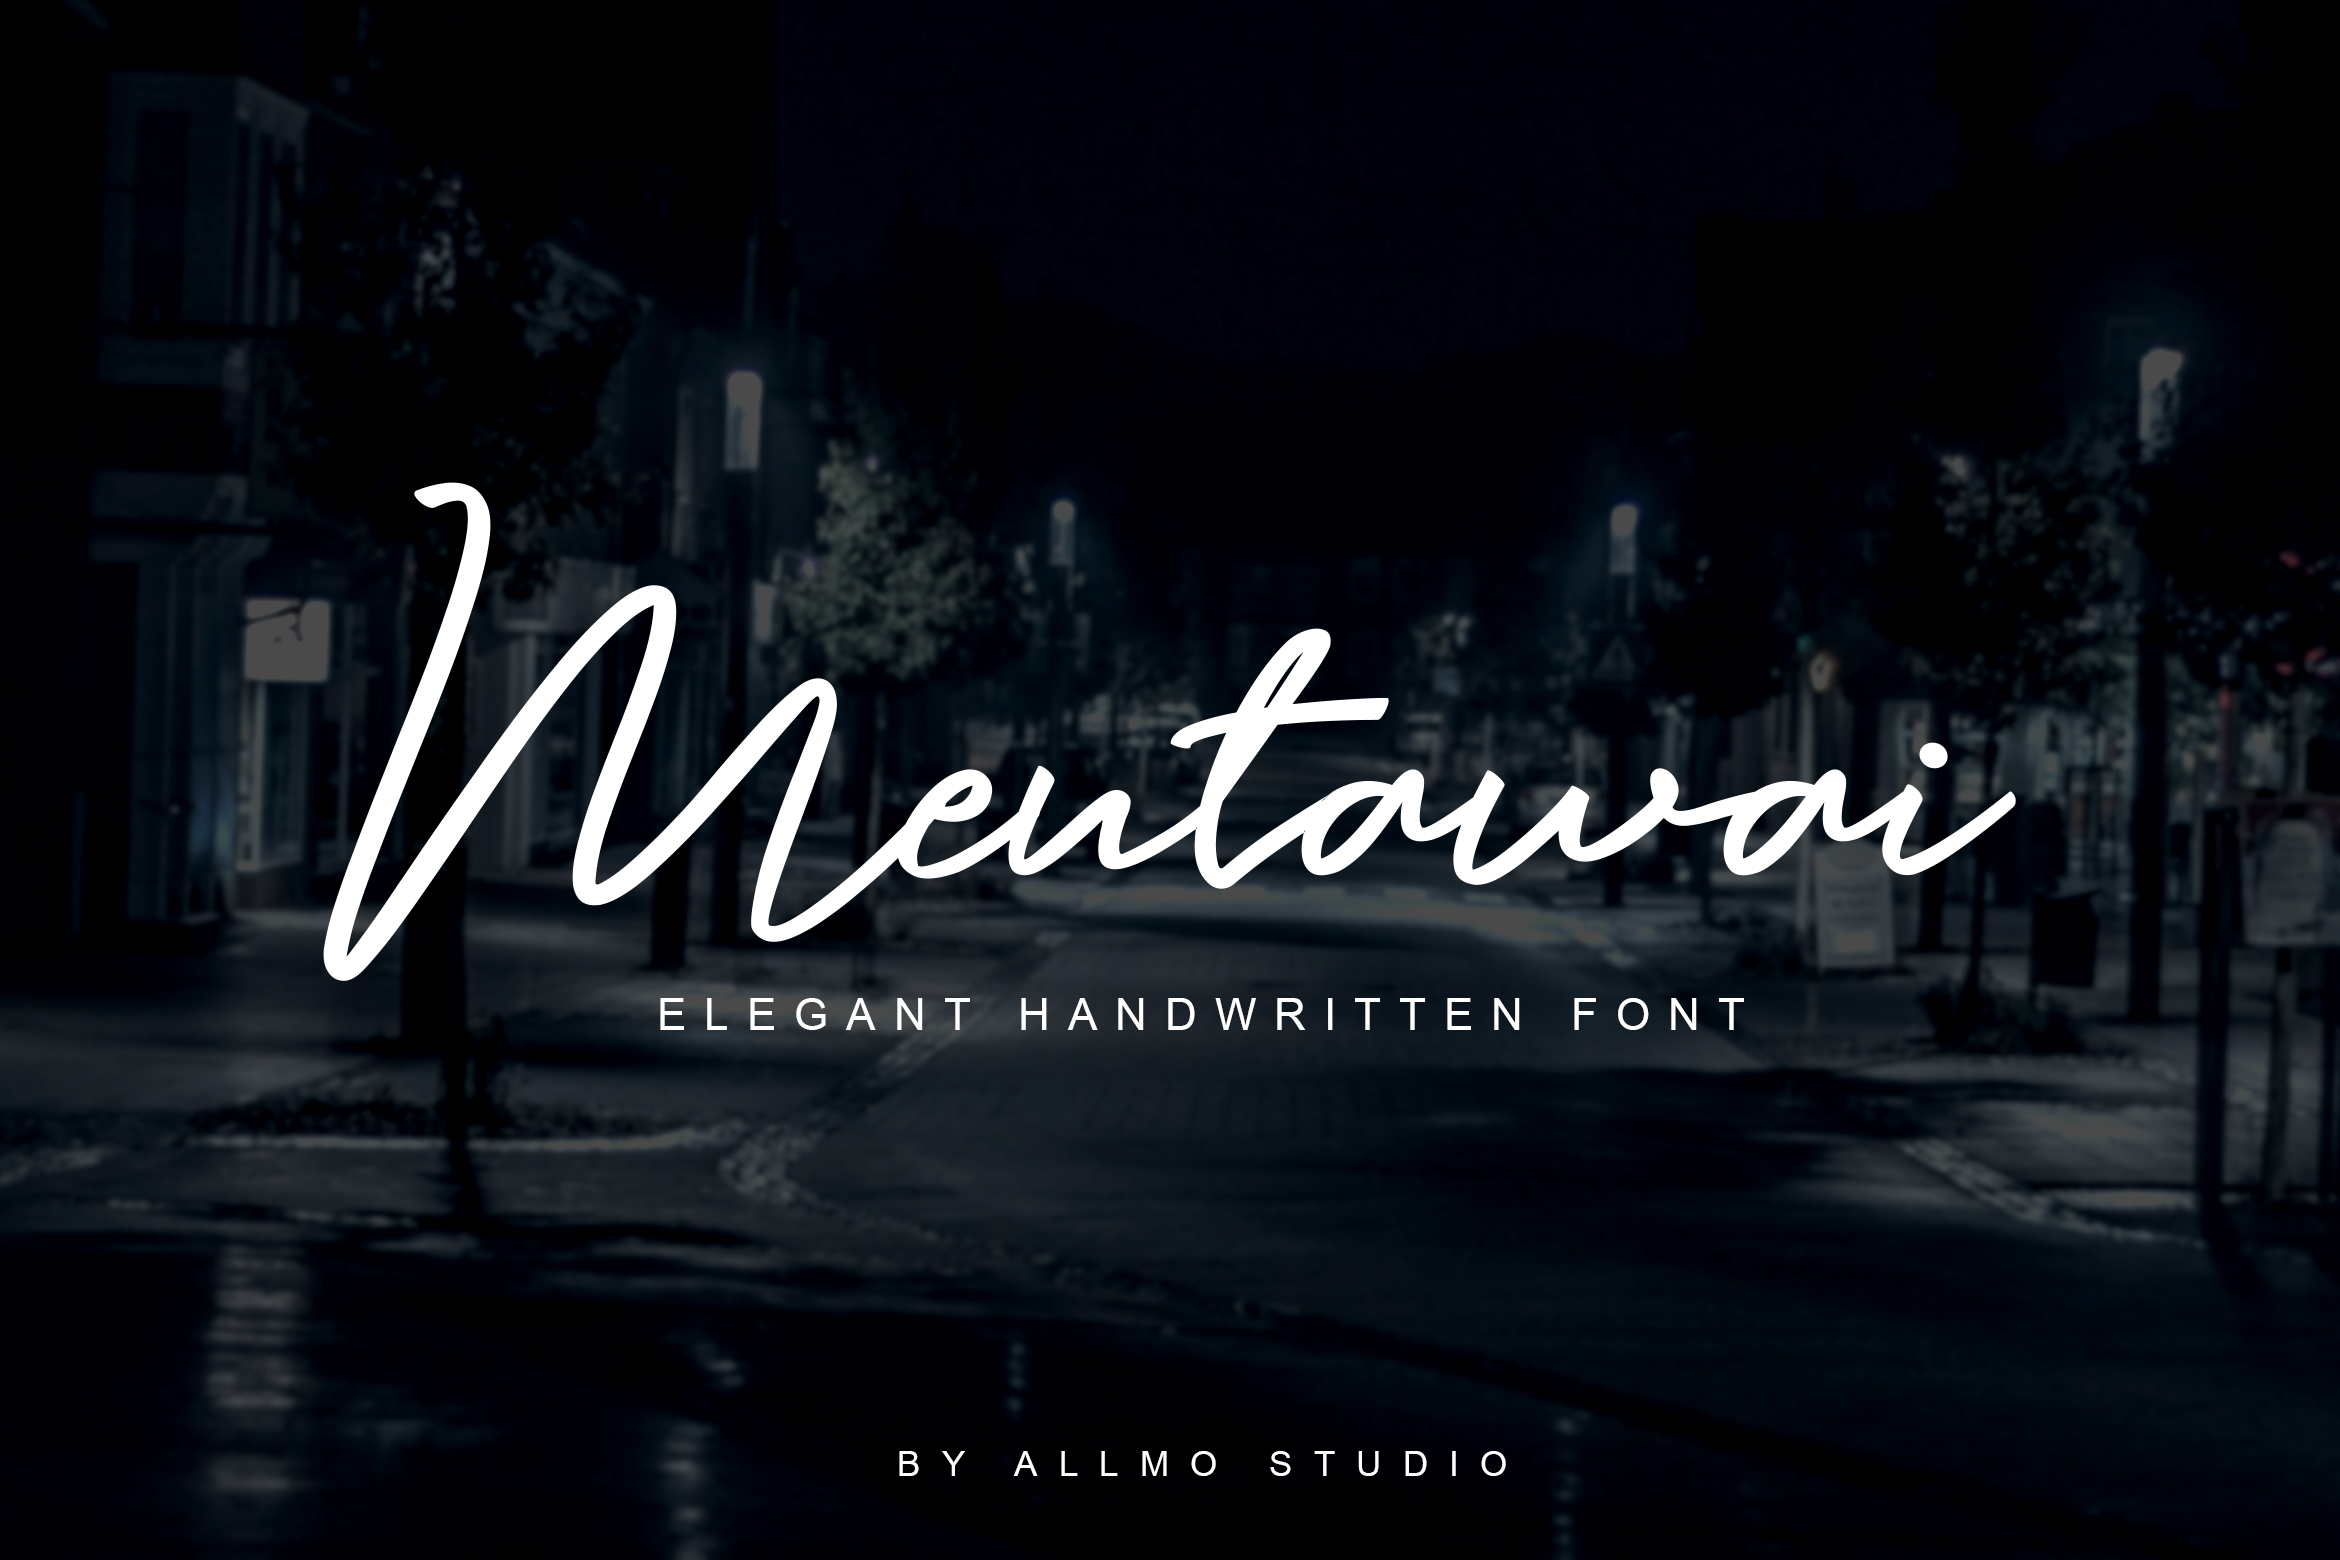  Mentawai  Signature Font Befonts com